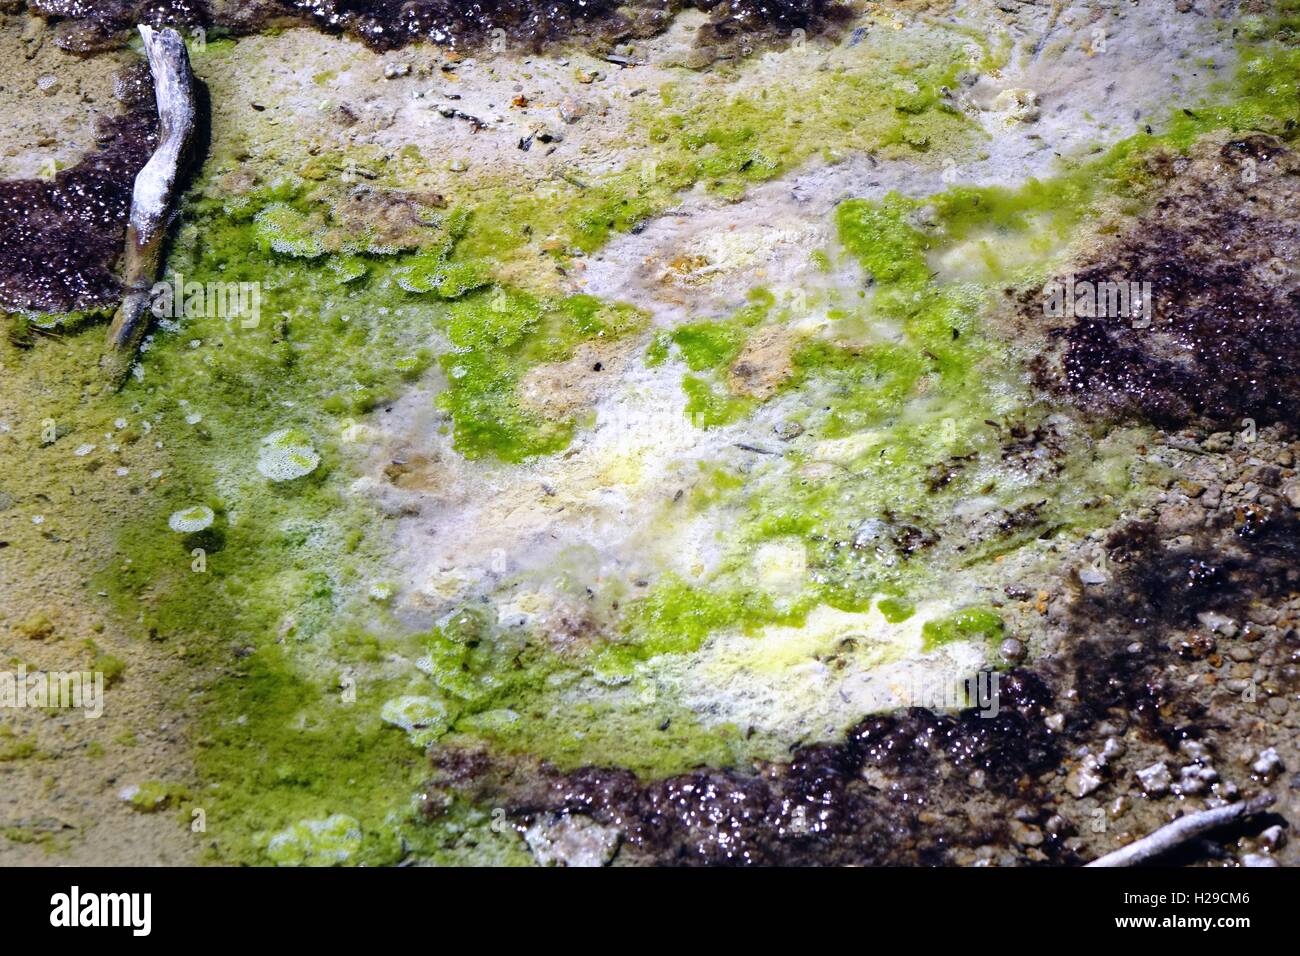 La cause des algues Cyanidium couleur vert lime dans ce petit ruisseau. Bassin en porcelaine, Norris Geyser Basin, Parc National de Yellowstone Banque D'Images